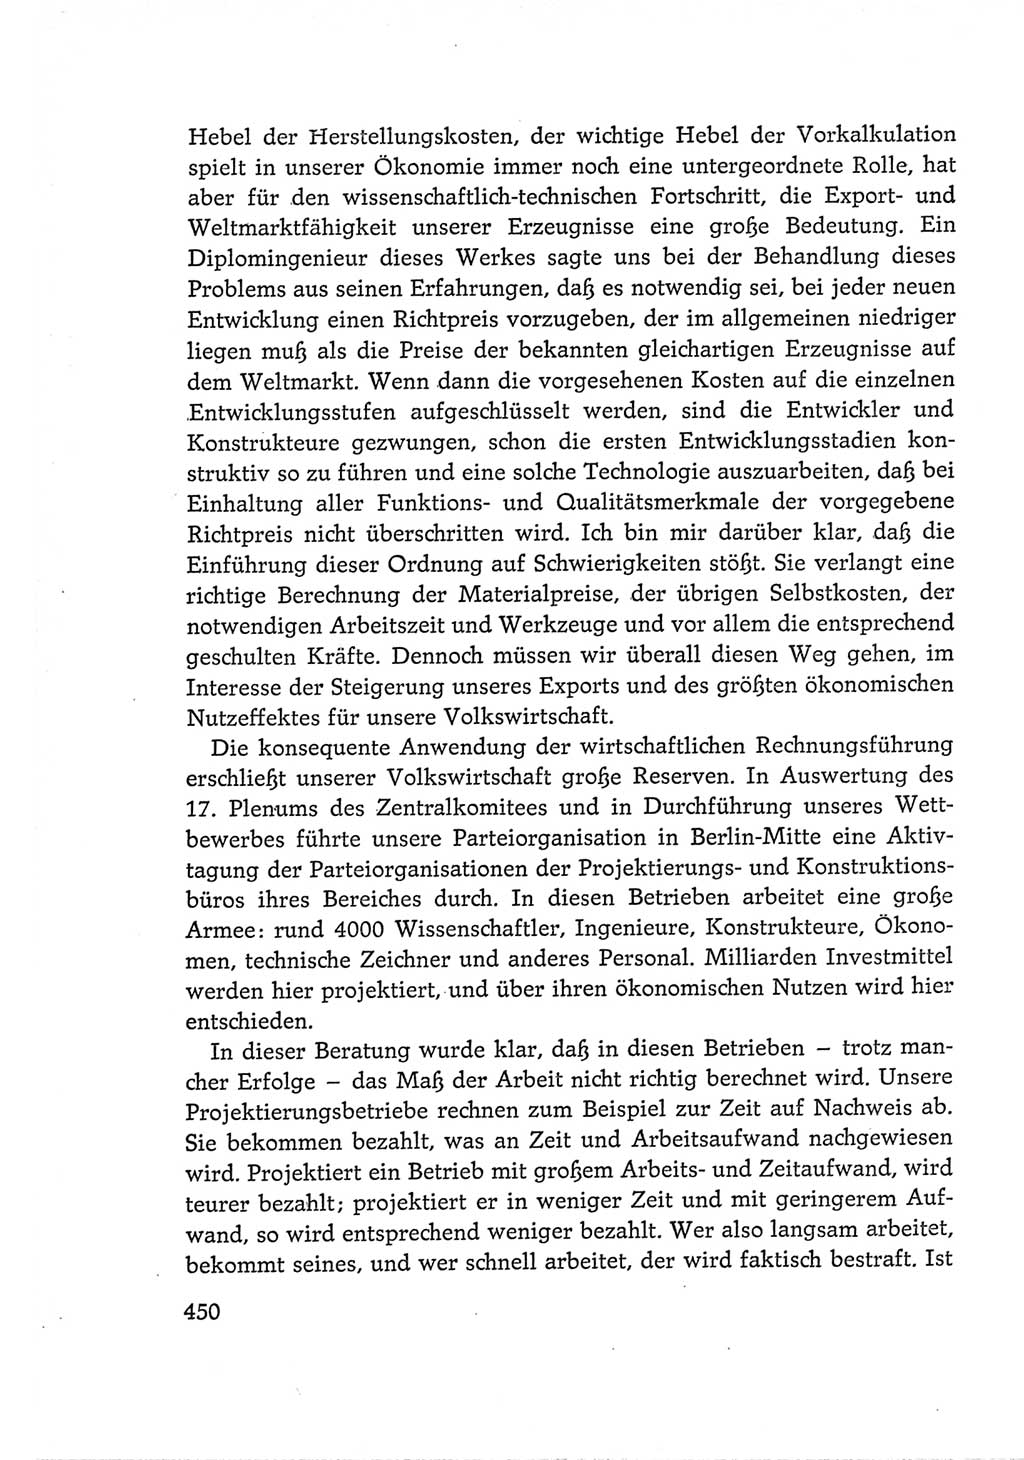 Protokoll der Verhandlungen des Ⅵ. Parteitages der Sozialistischen Einheitspartei Deutschlands (SED) [Deutsche Demokratische Republik (DDR)] 1963, Band Ⅰ, Seite 450 (Prot. Verh. Ⅵ. PT SED DDR 1963, Bd. Ⅰ, S. 450)